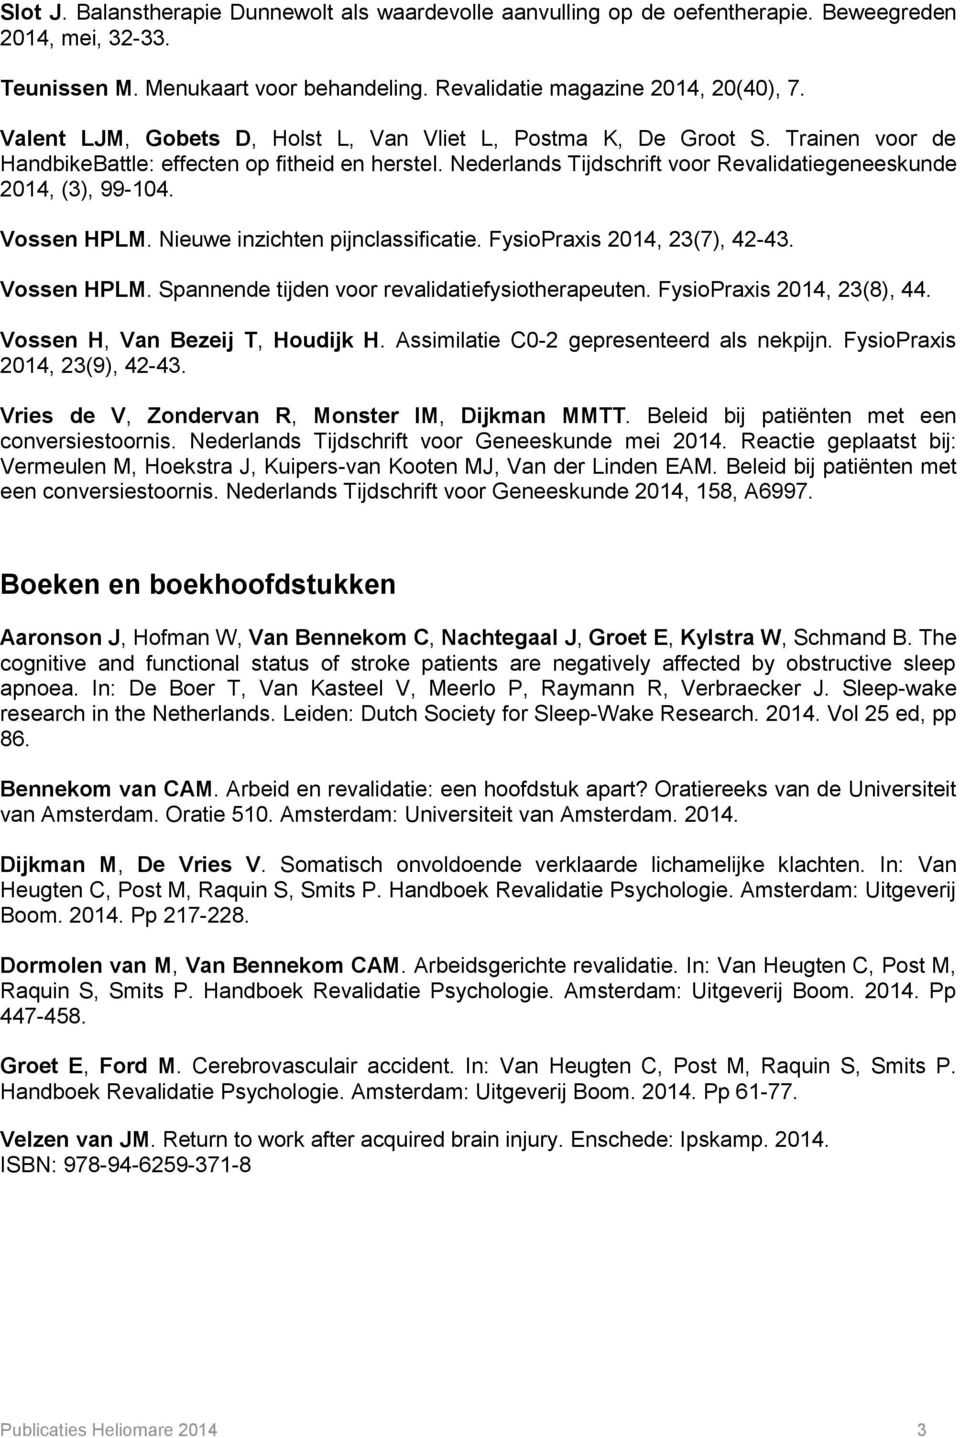 Vossen HPLM. Nieuwe inzichten pijnclassificatie. FysioPraxis 2014, 23(7), 42-43. Vossen HPLM. Spannende tijden voor revalidatiefysiotherapeuten. FysioPraxis 2014, 23(8), 44.